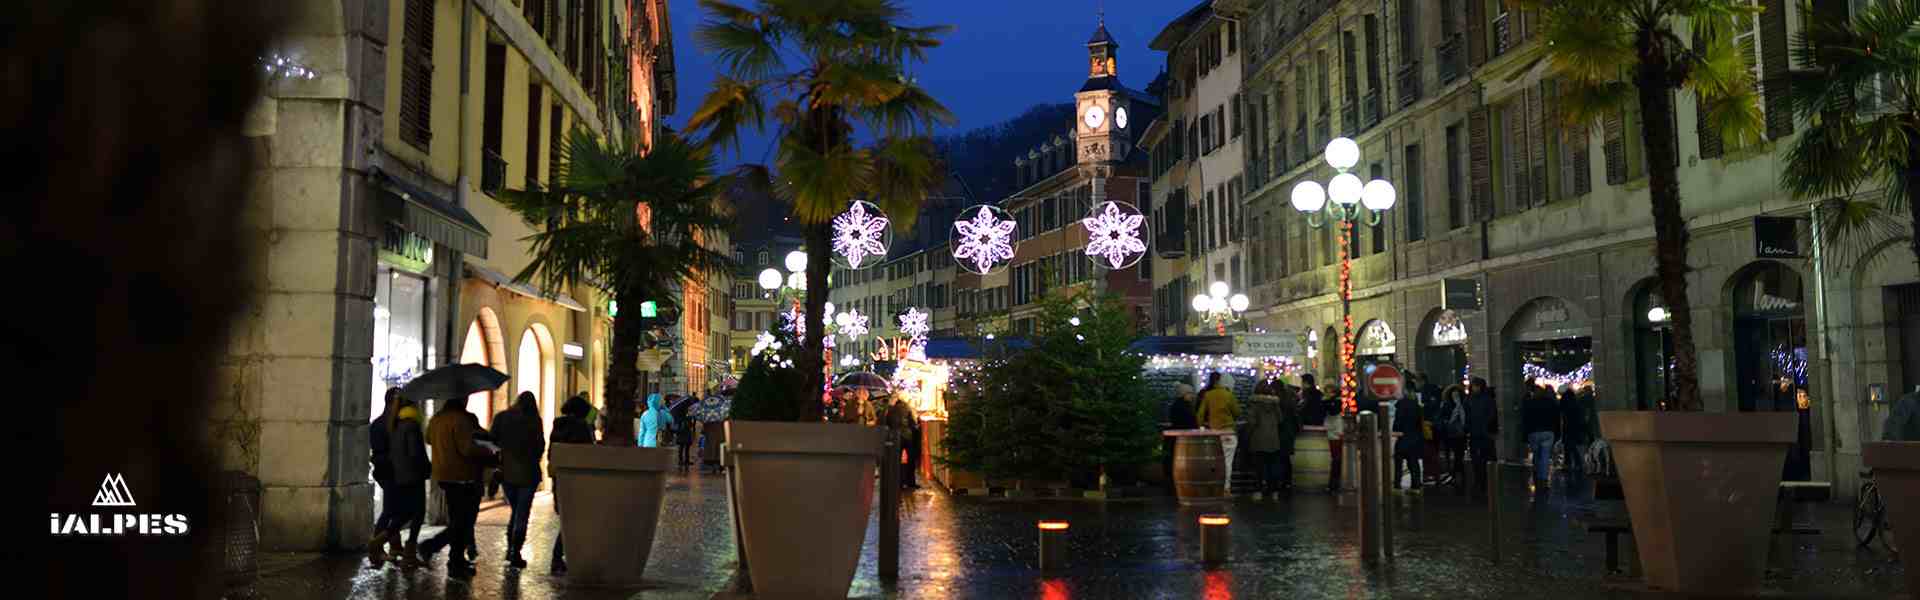 Noël à Chambéry, Savoie